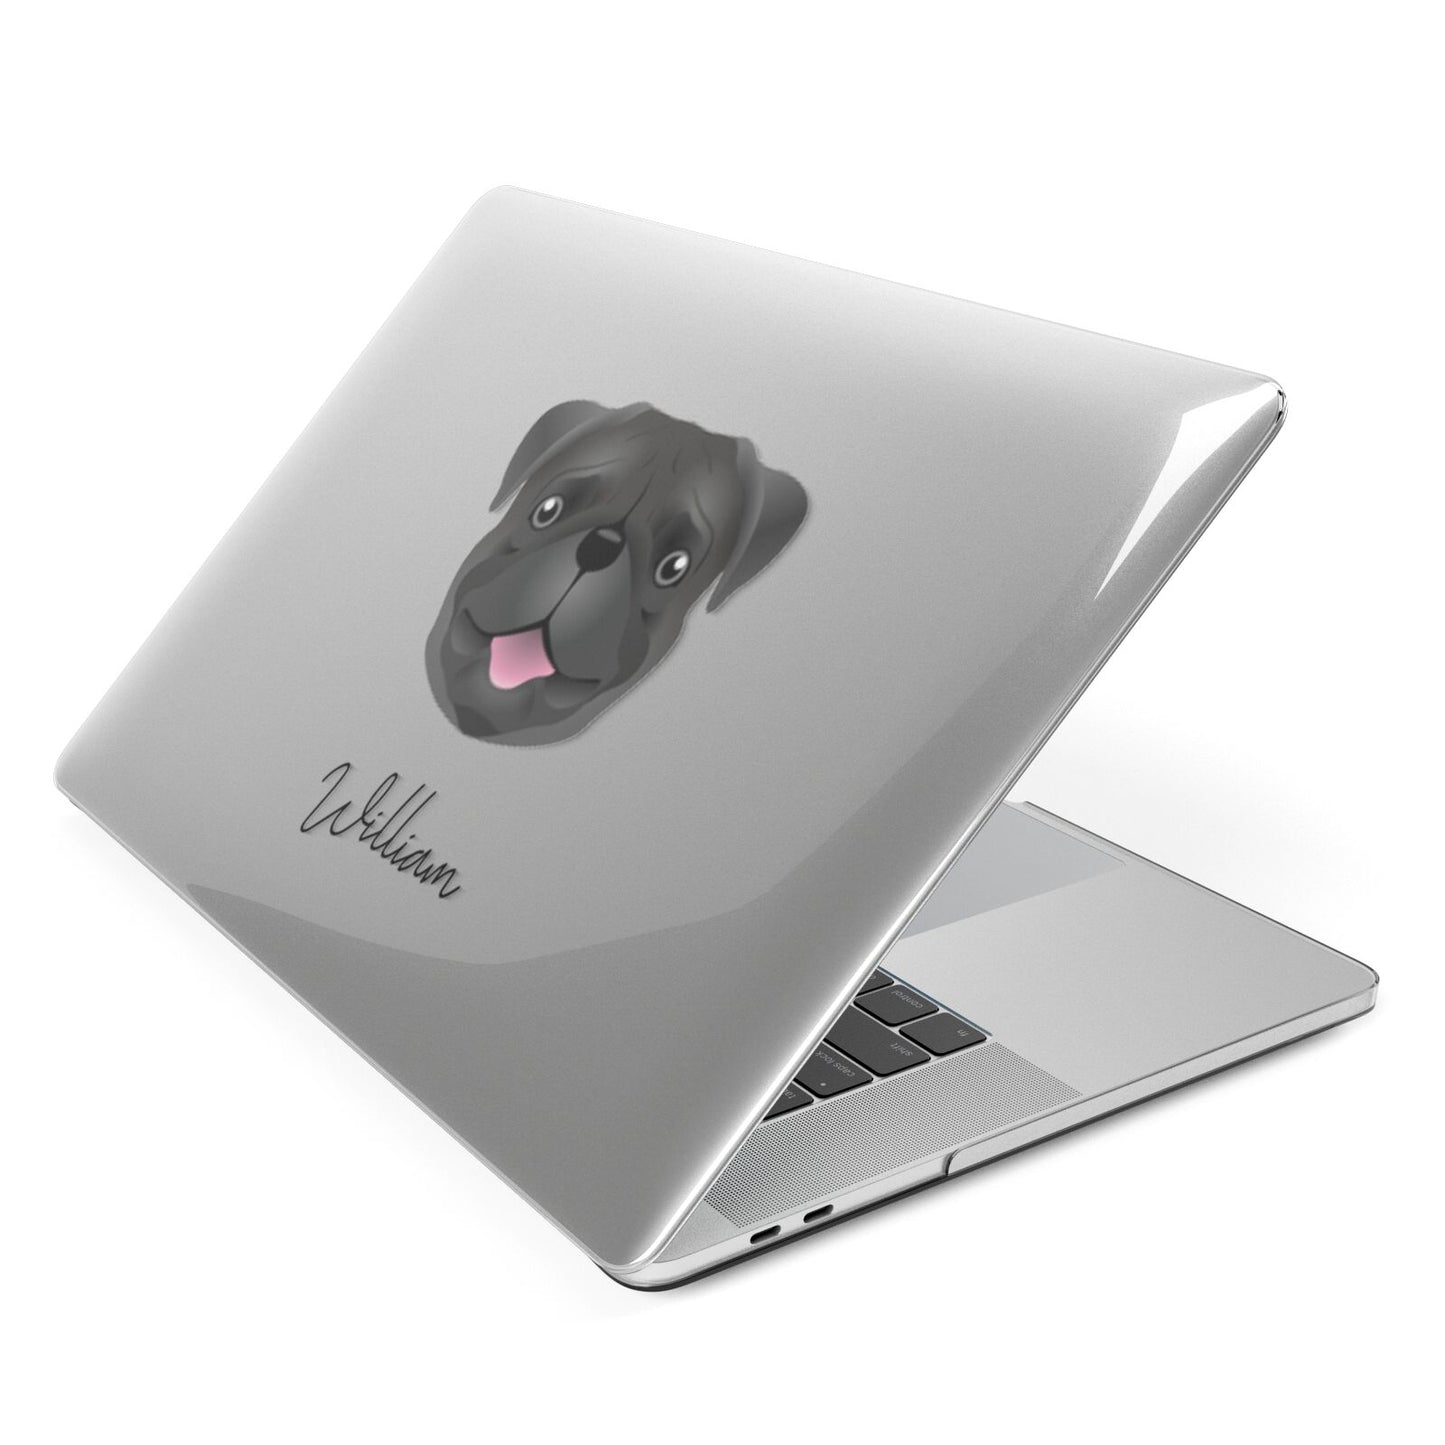 Pug Personalised Apple MacBook Case Side View